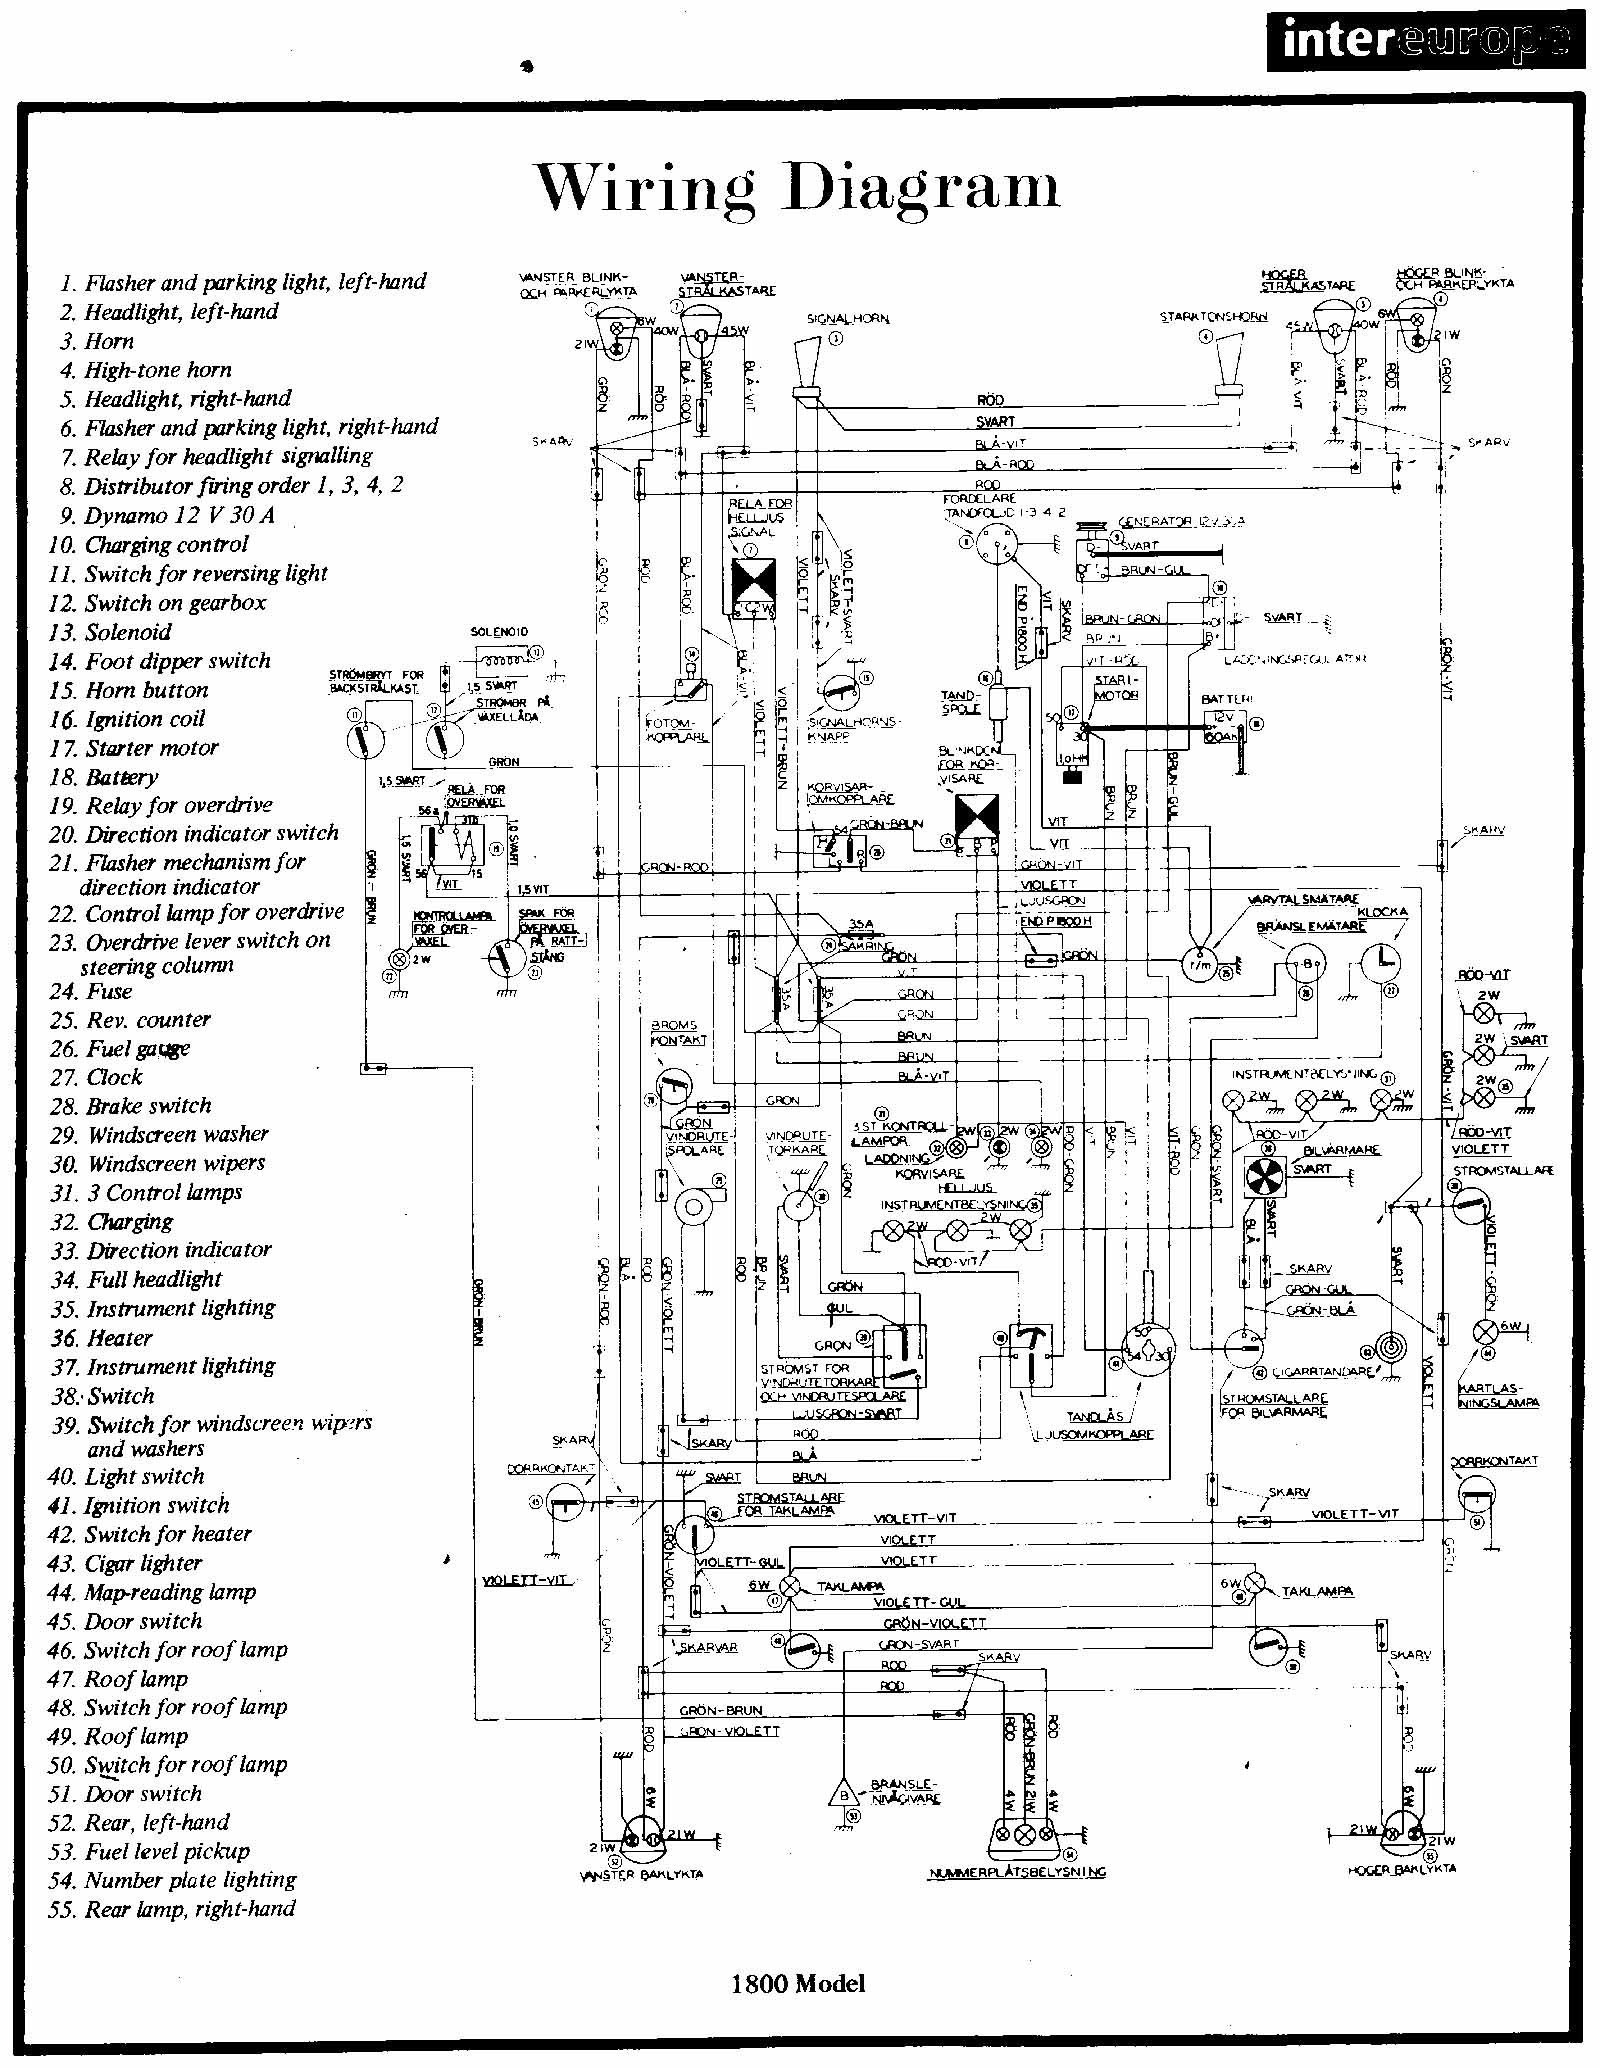 2003 Mitsubishi Eclipse Engine Diagram 2001 Mitsubishi Eclipse Engine Diagram Worksheet and Wiring Diagram • Of 2003 Mitsubishi Eclipse Engine Diagram